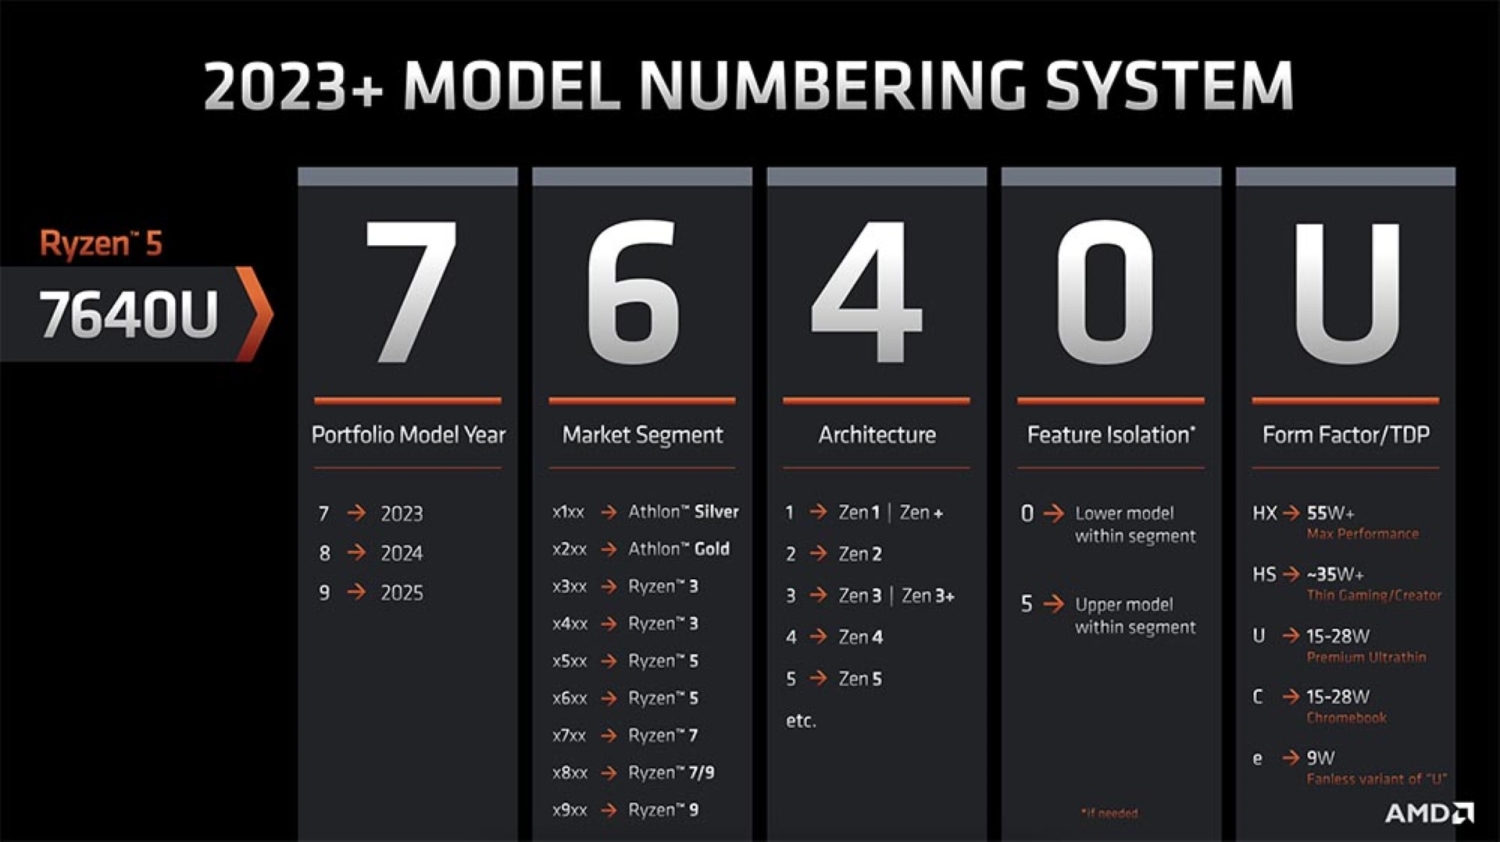 मोबाइल प्रोसेसर के लिए AMD की 2023 नामकरण योजना।